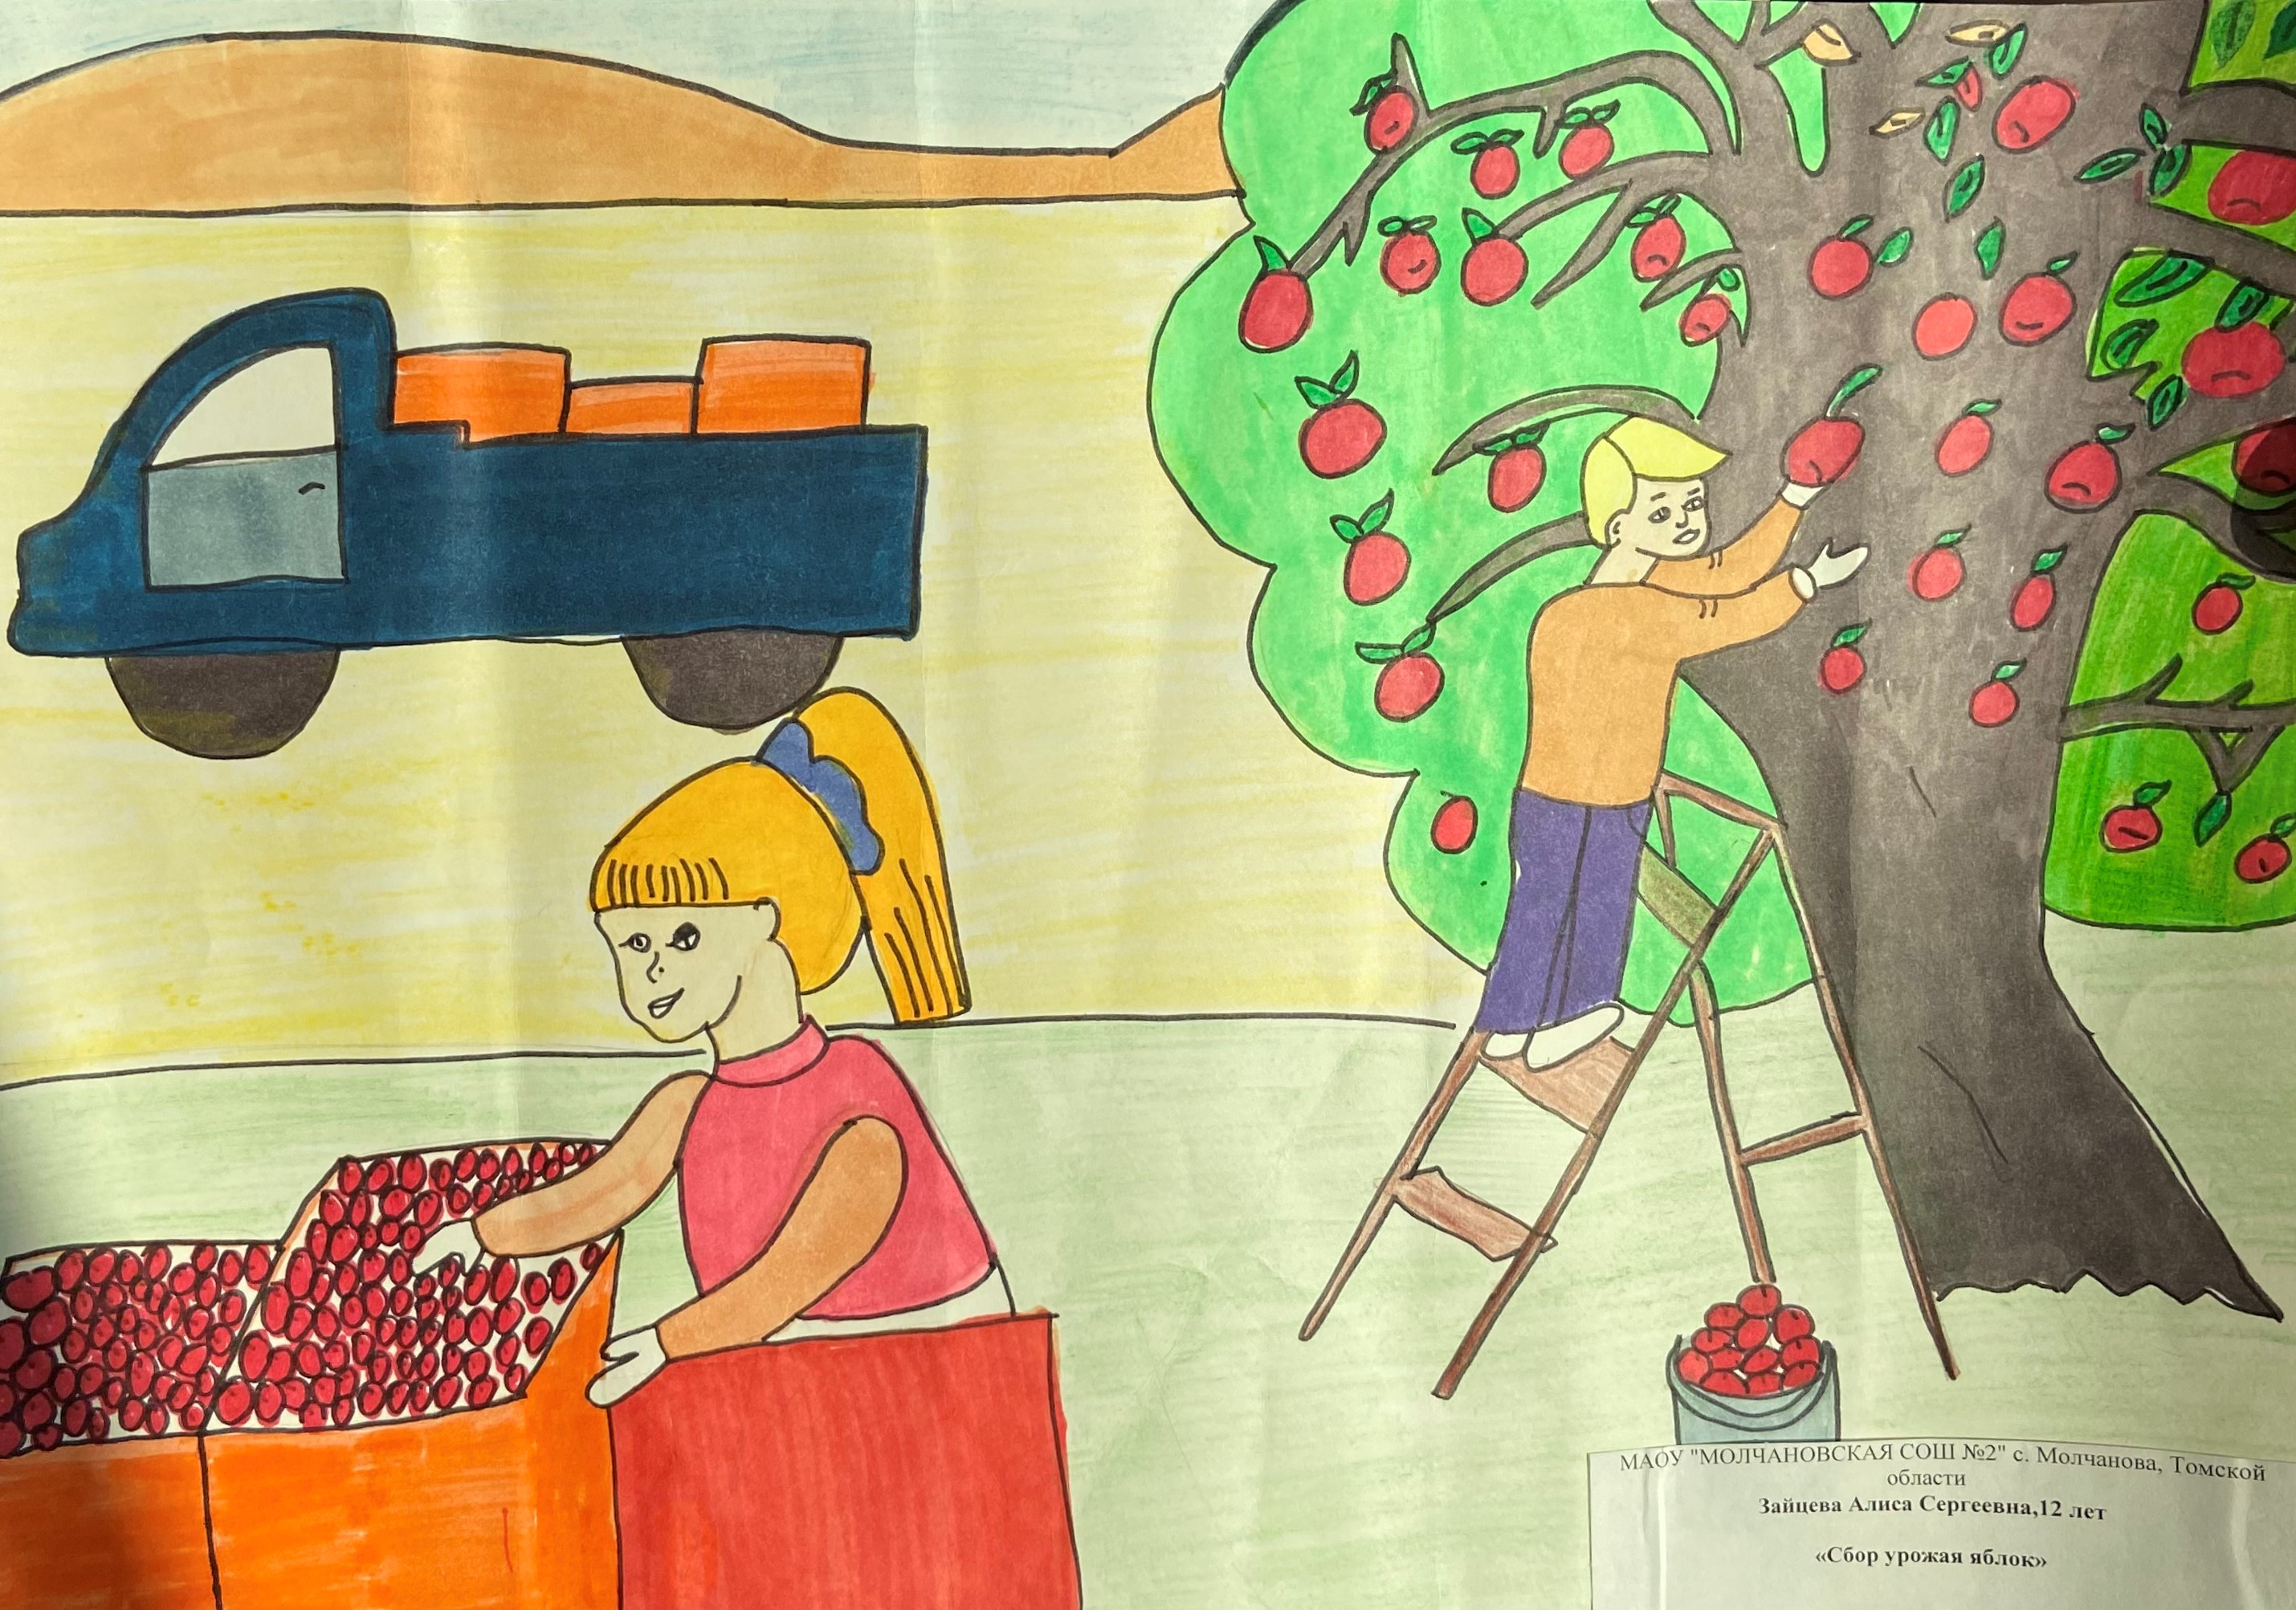 "Сбор урожая яблок", Алиса Зайцева, 12 лет
Молчановская СОШ №2